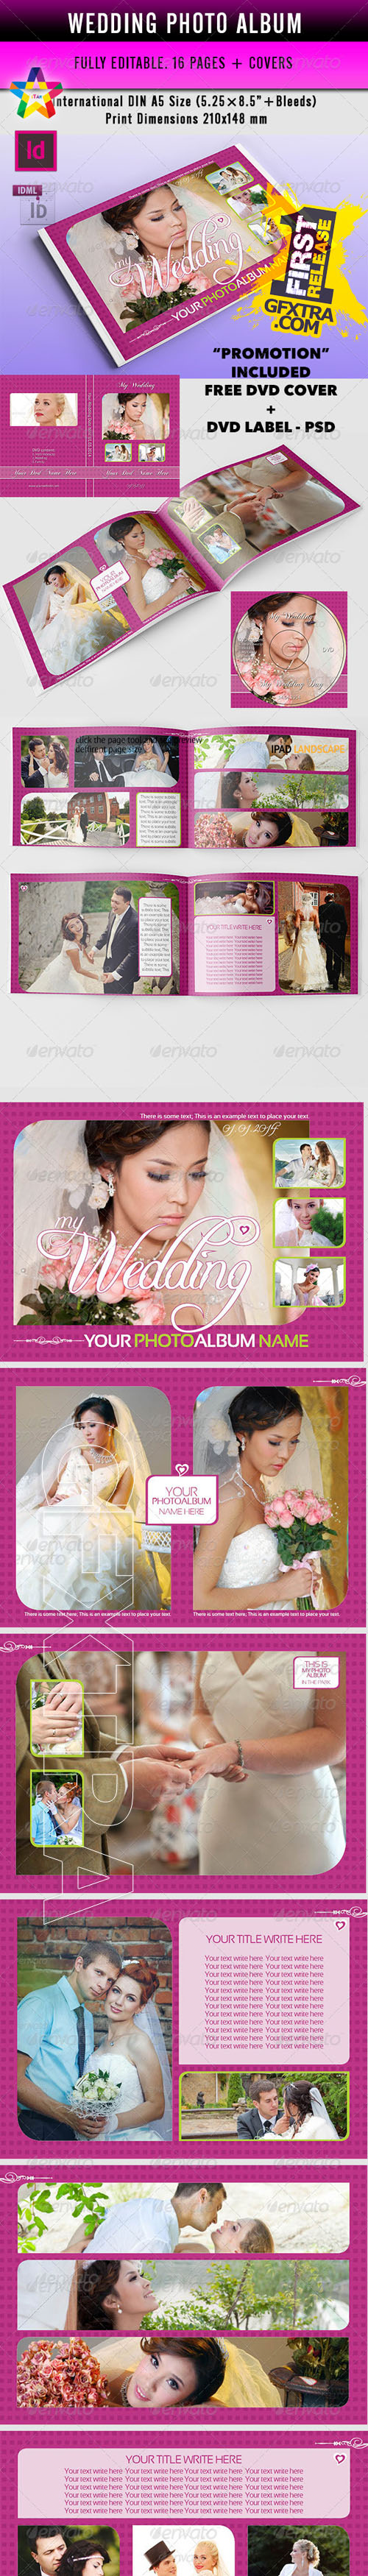 GraphicRiver - My Wedding Photo Album (v.1) indd 